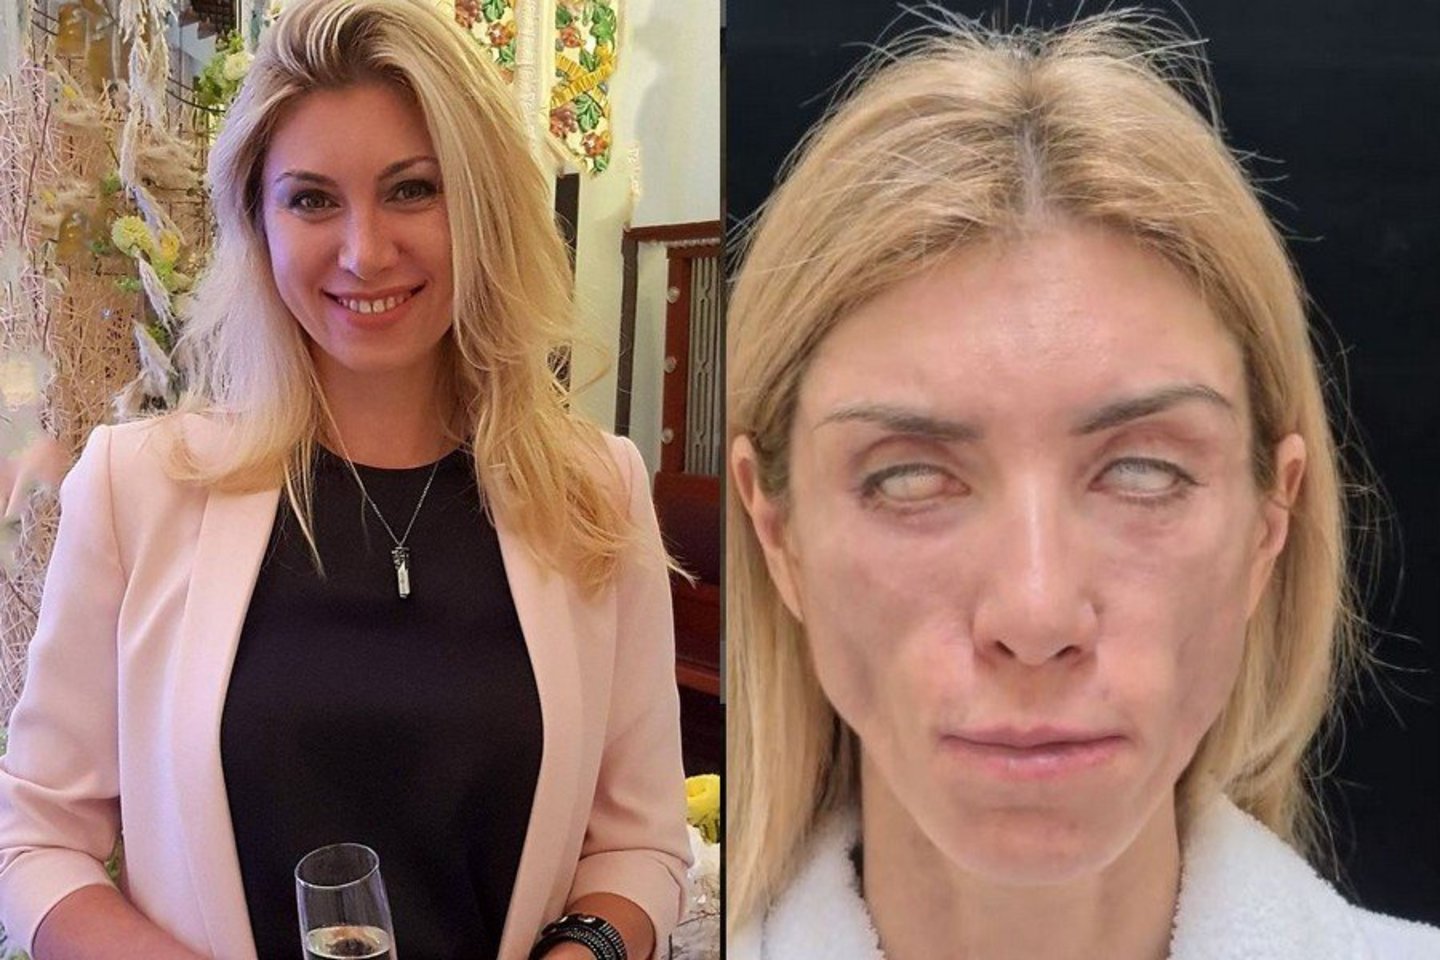  Po grožio procedūrų Julija Tarasevič išgyvena tikrą košmarą.<br> Instagramo nuotr. ir stopkadras.